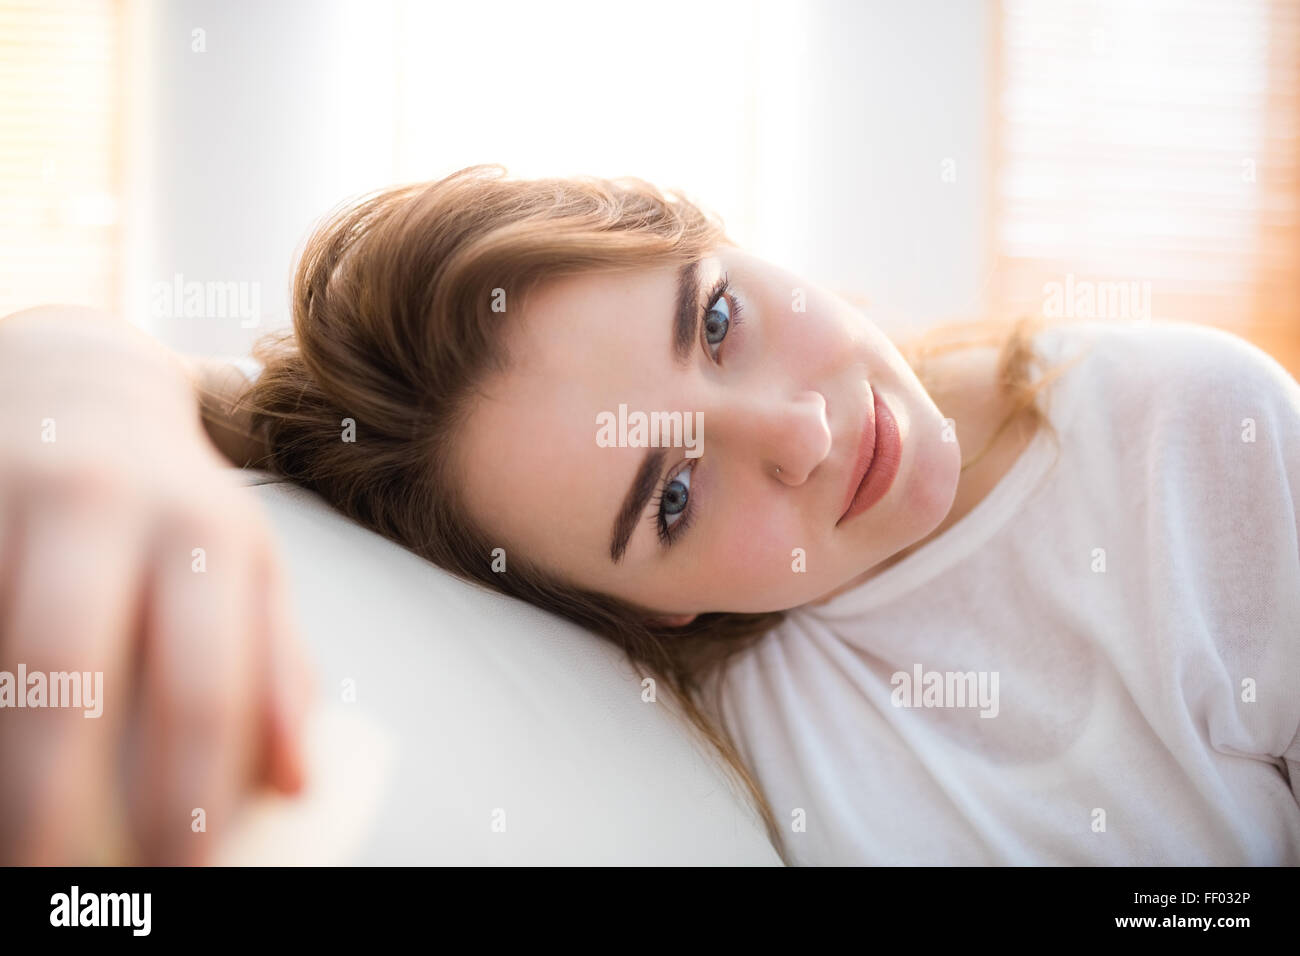 Sonriendo Pretty Woman colocando su cabeza en el sofá Foto de stock